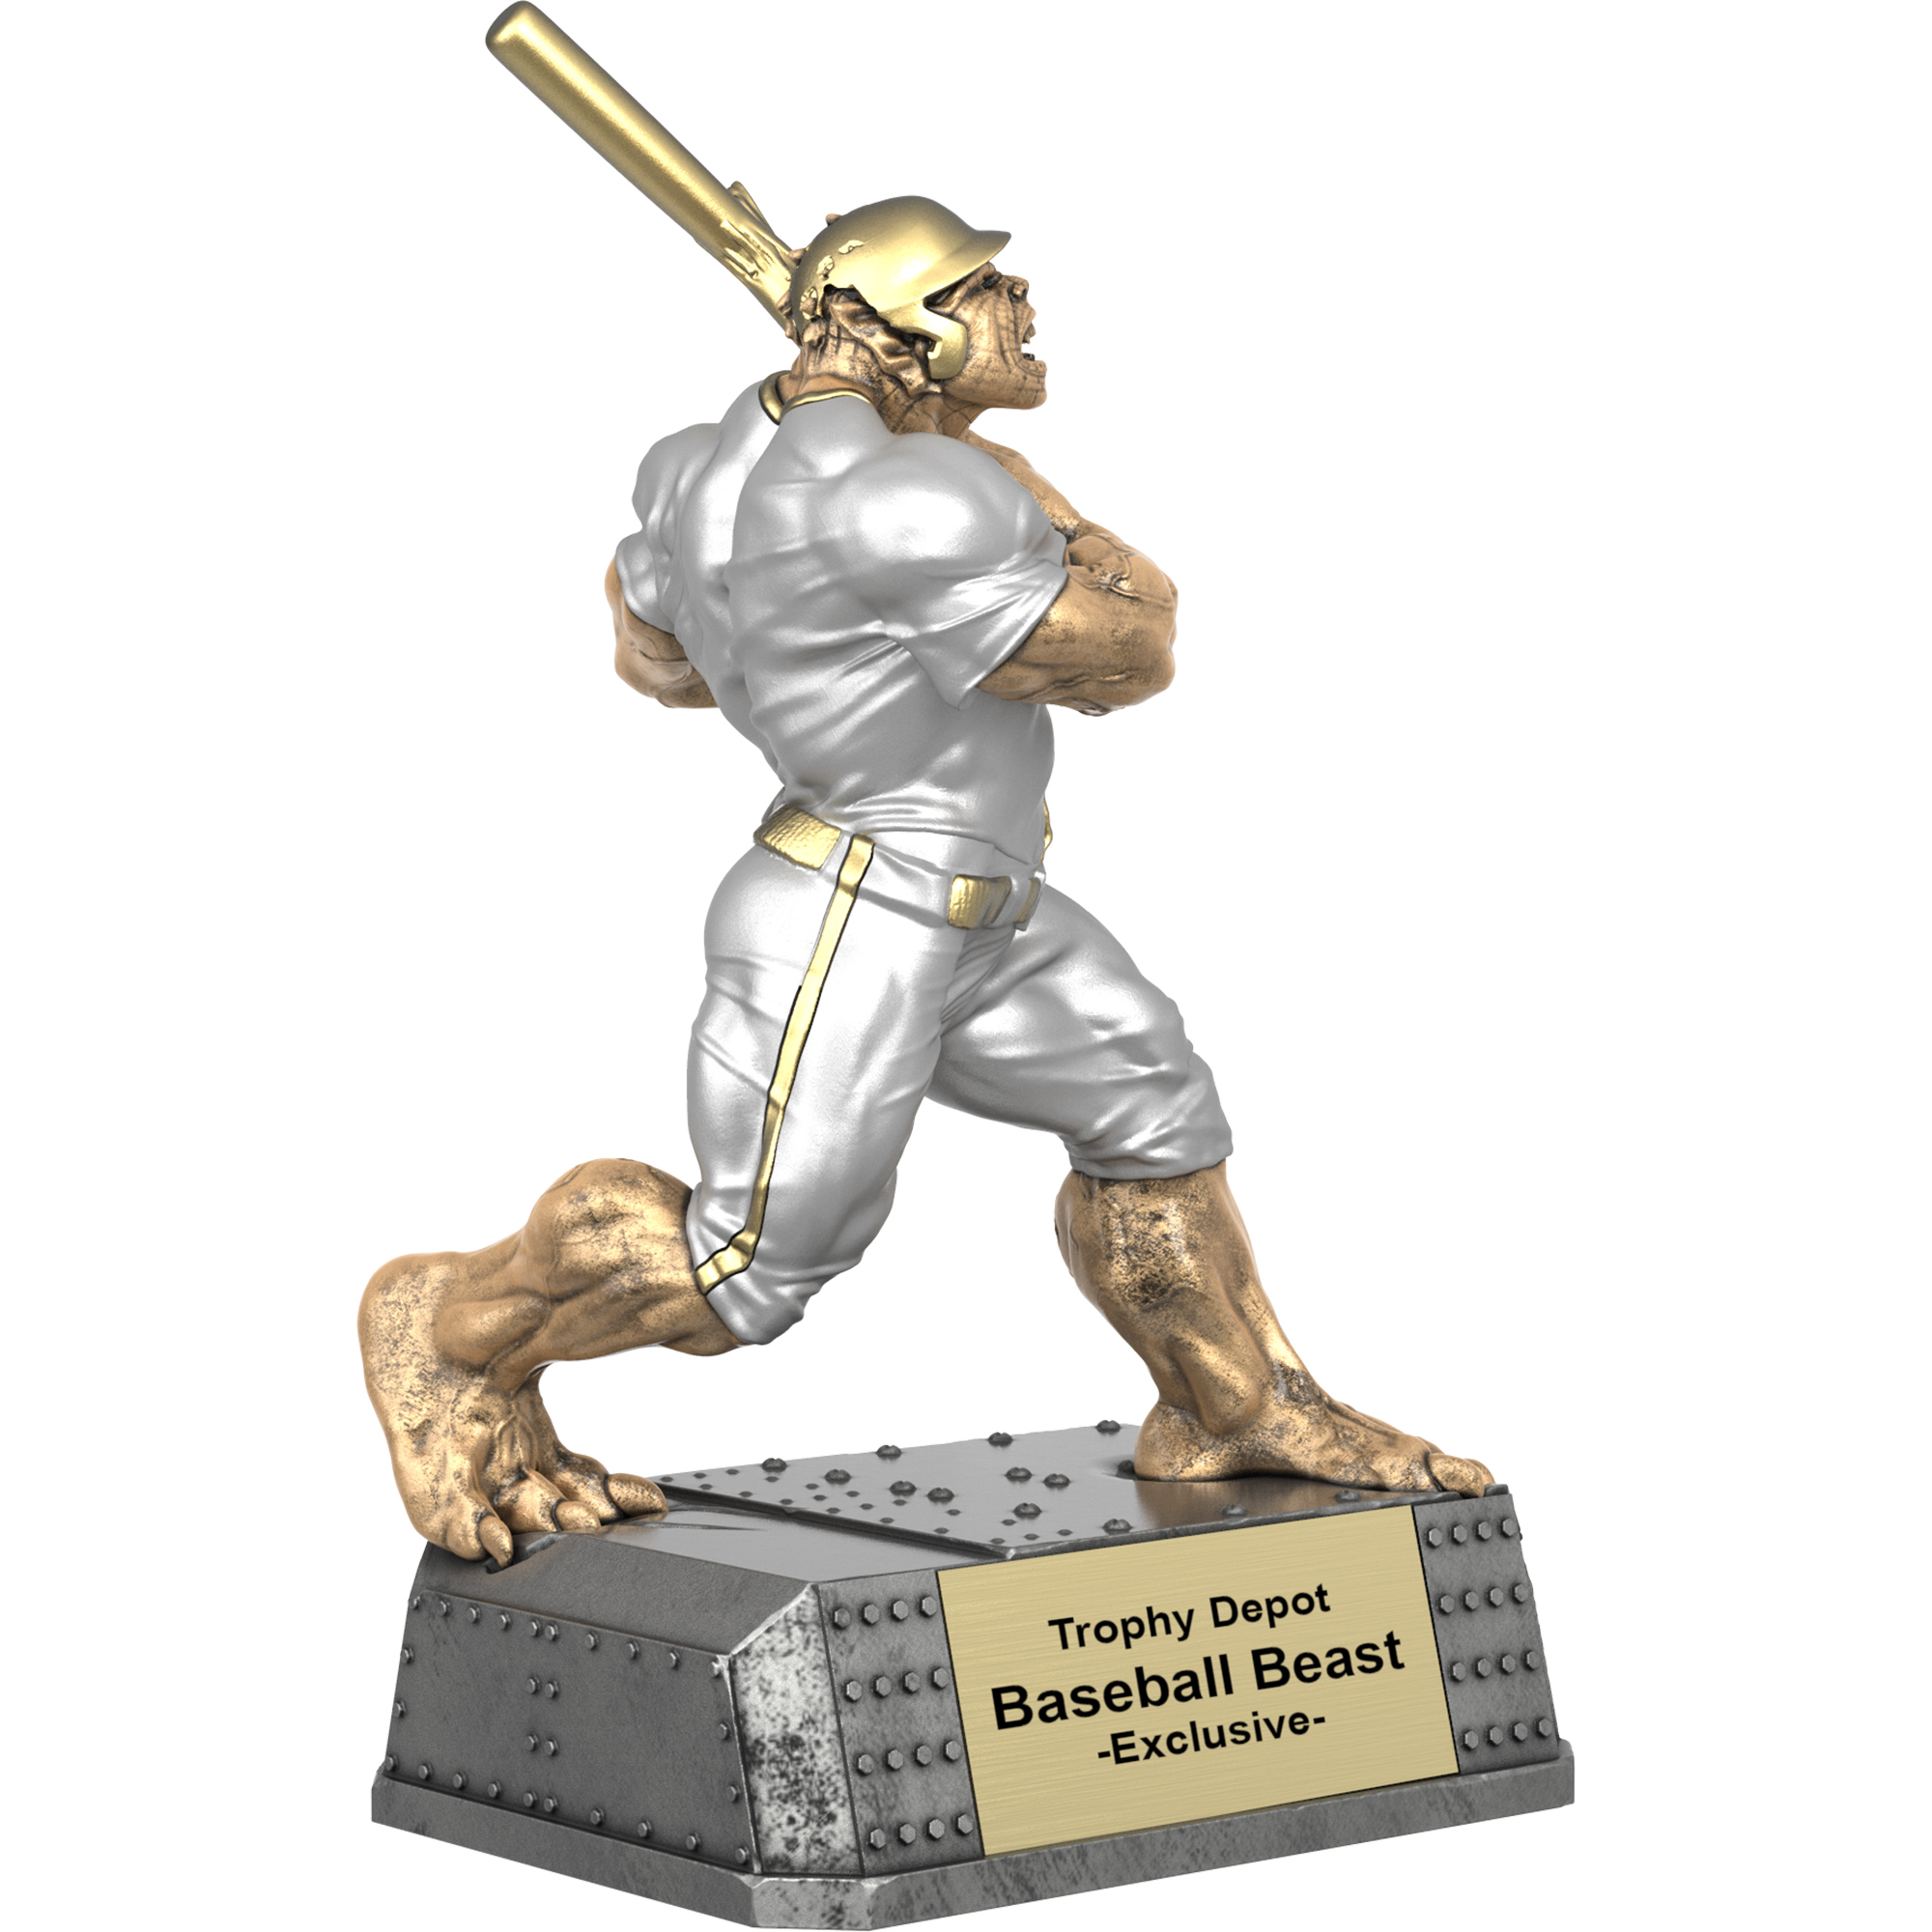 Baseball Beast, Monster Sculpture Trophy - 6.75 inch